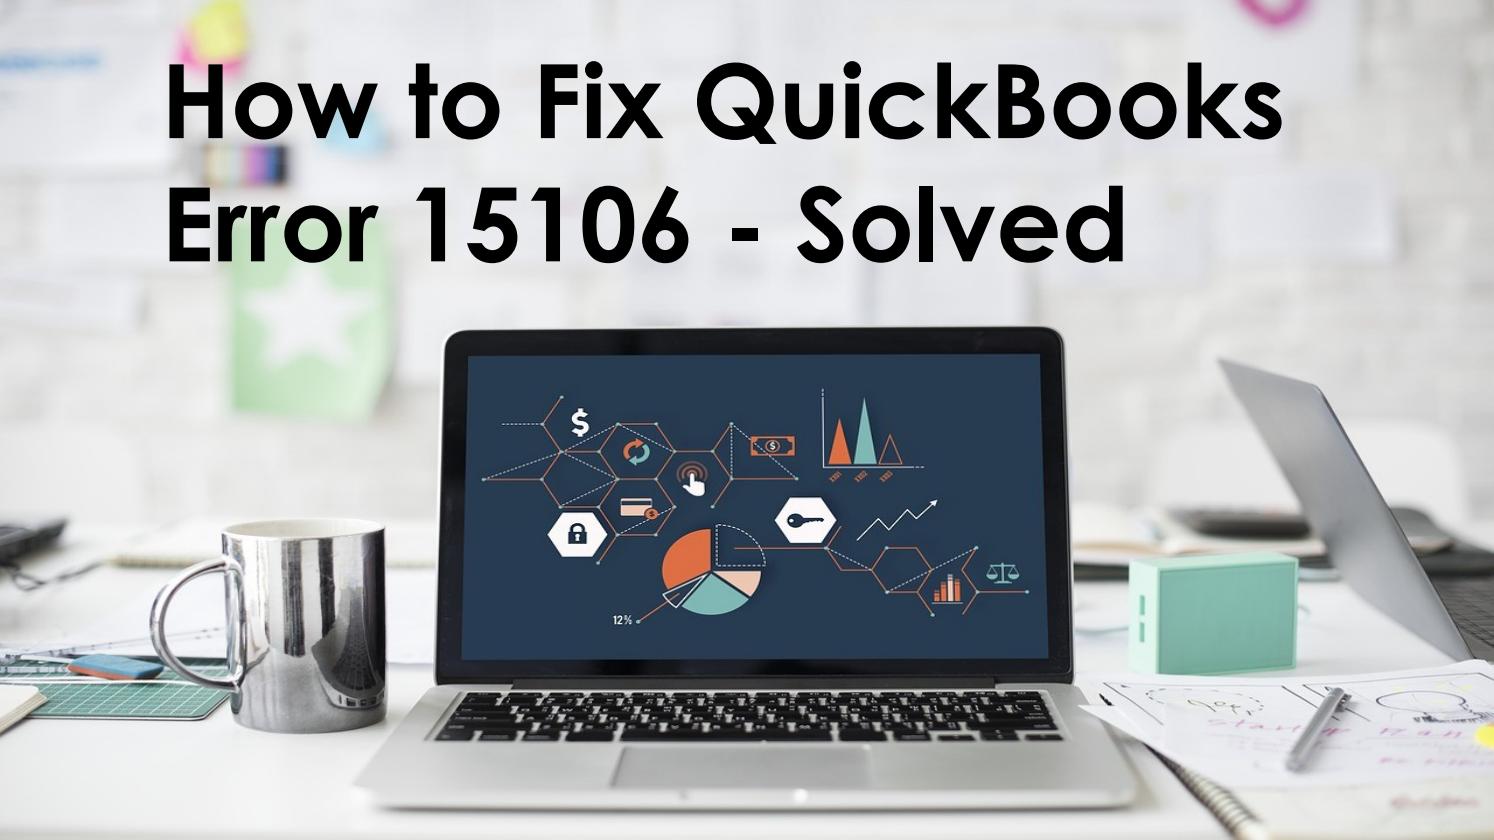 Quickbooks Error 15106